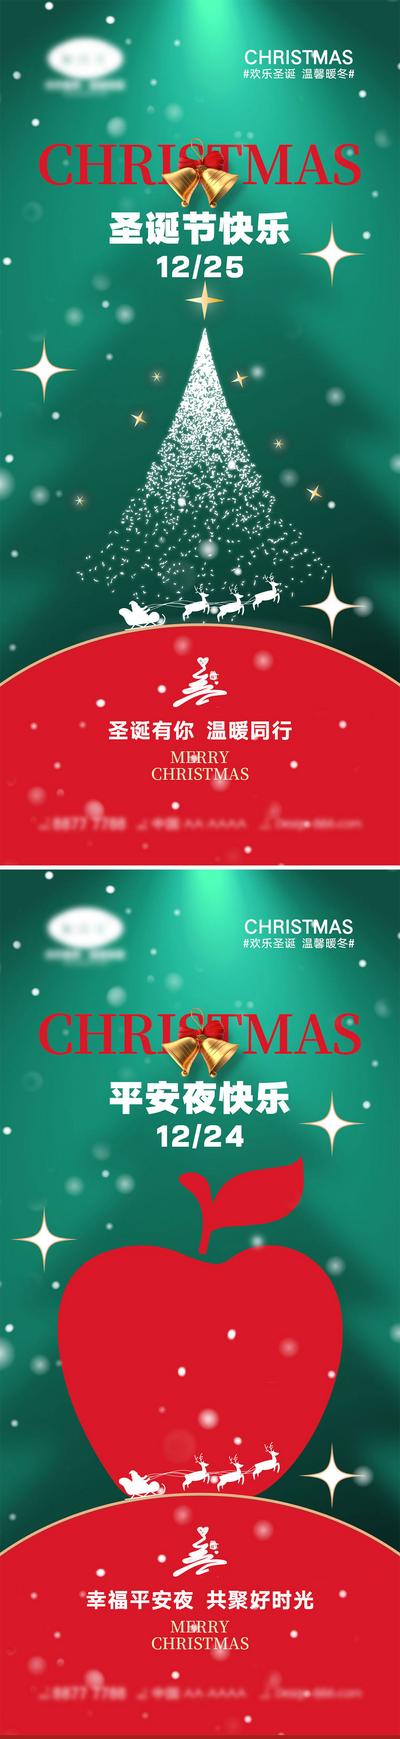 南门网 海报 西方节日 圣诞节 平安夜 圣诞老人 礼物 麋鹿 圣诞树 下雪